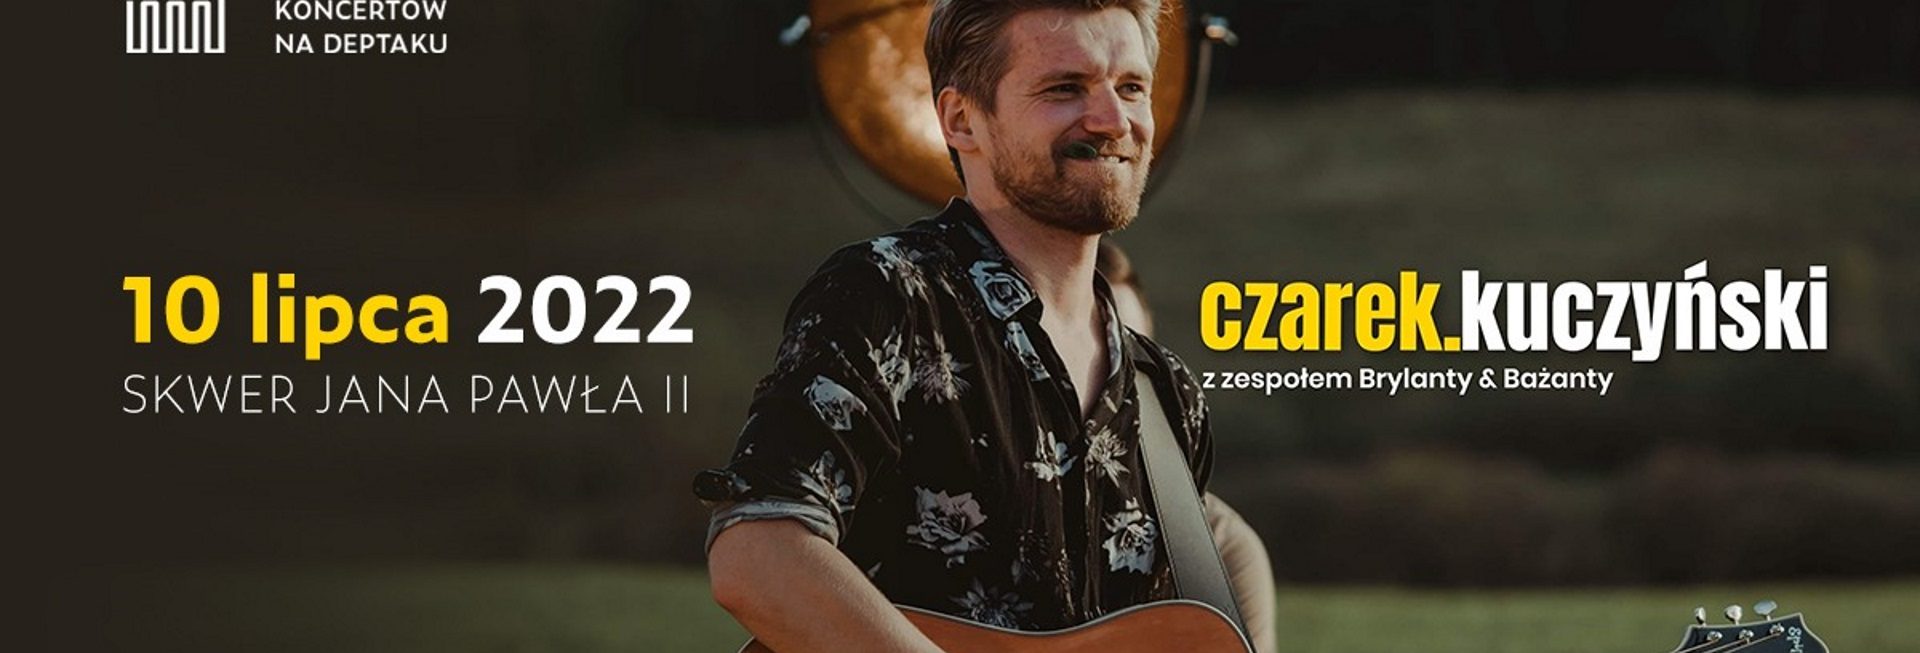 Plakat graficzny zapraszający na koncert Czarka Kuczyńskiego z zespołem Brylanty & Bażanty Mrągowo 2022.